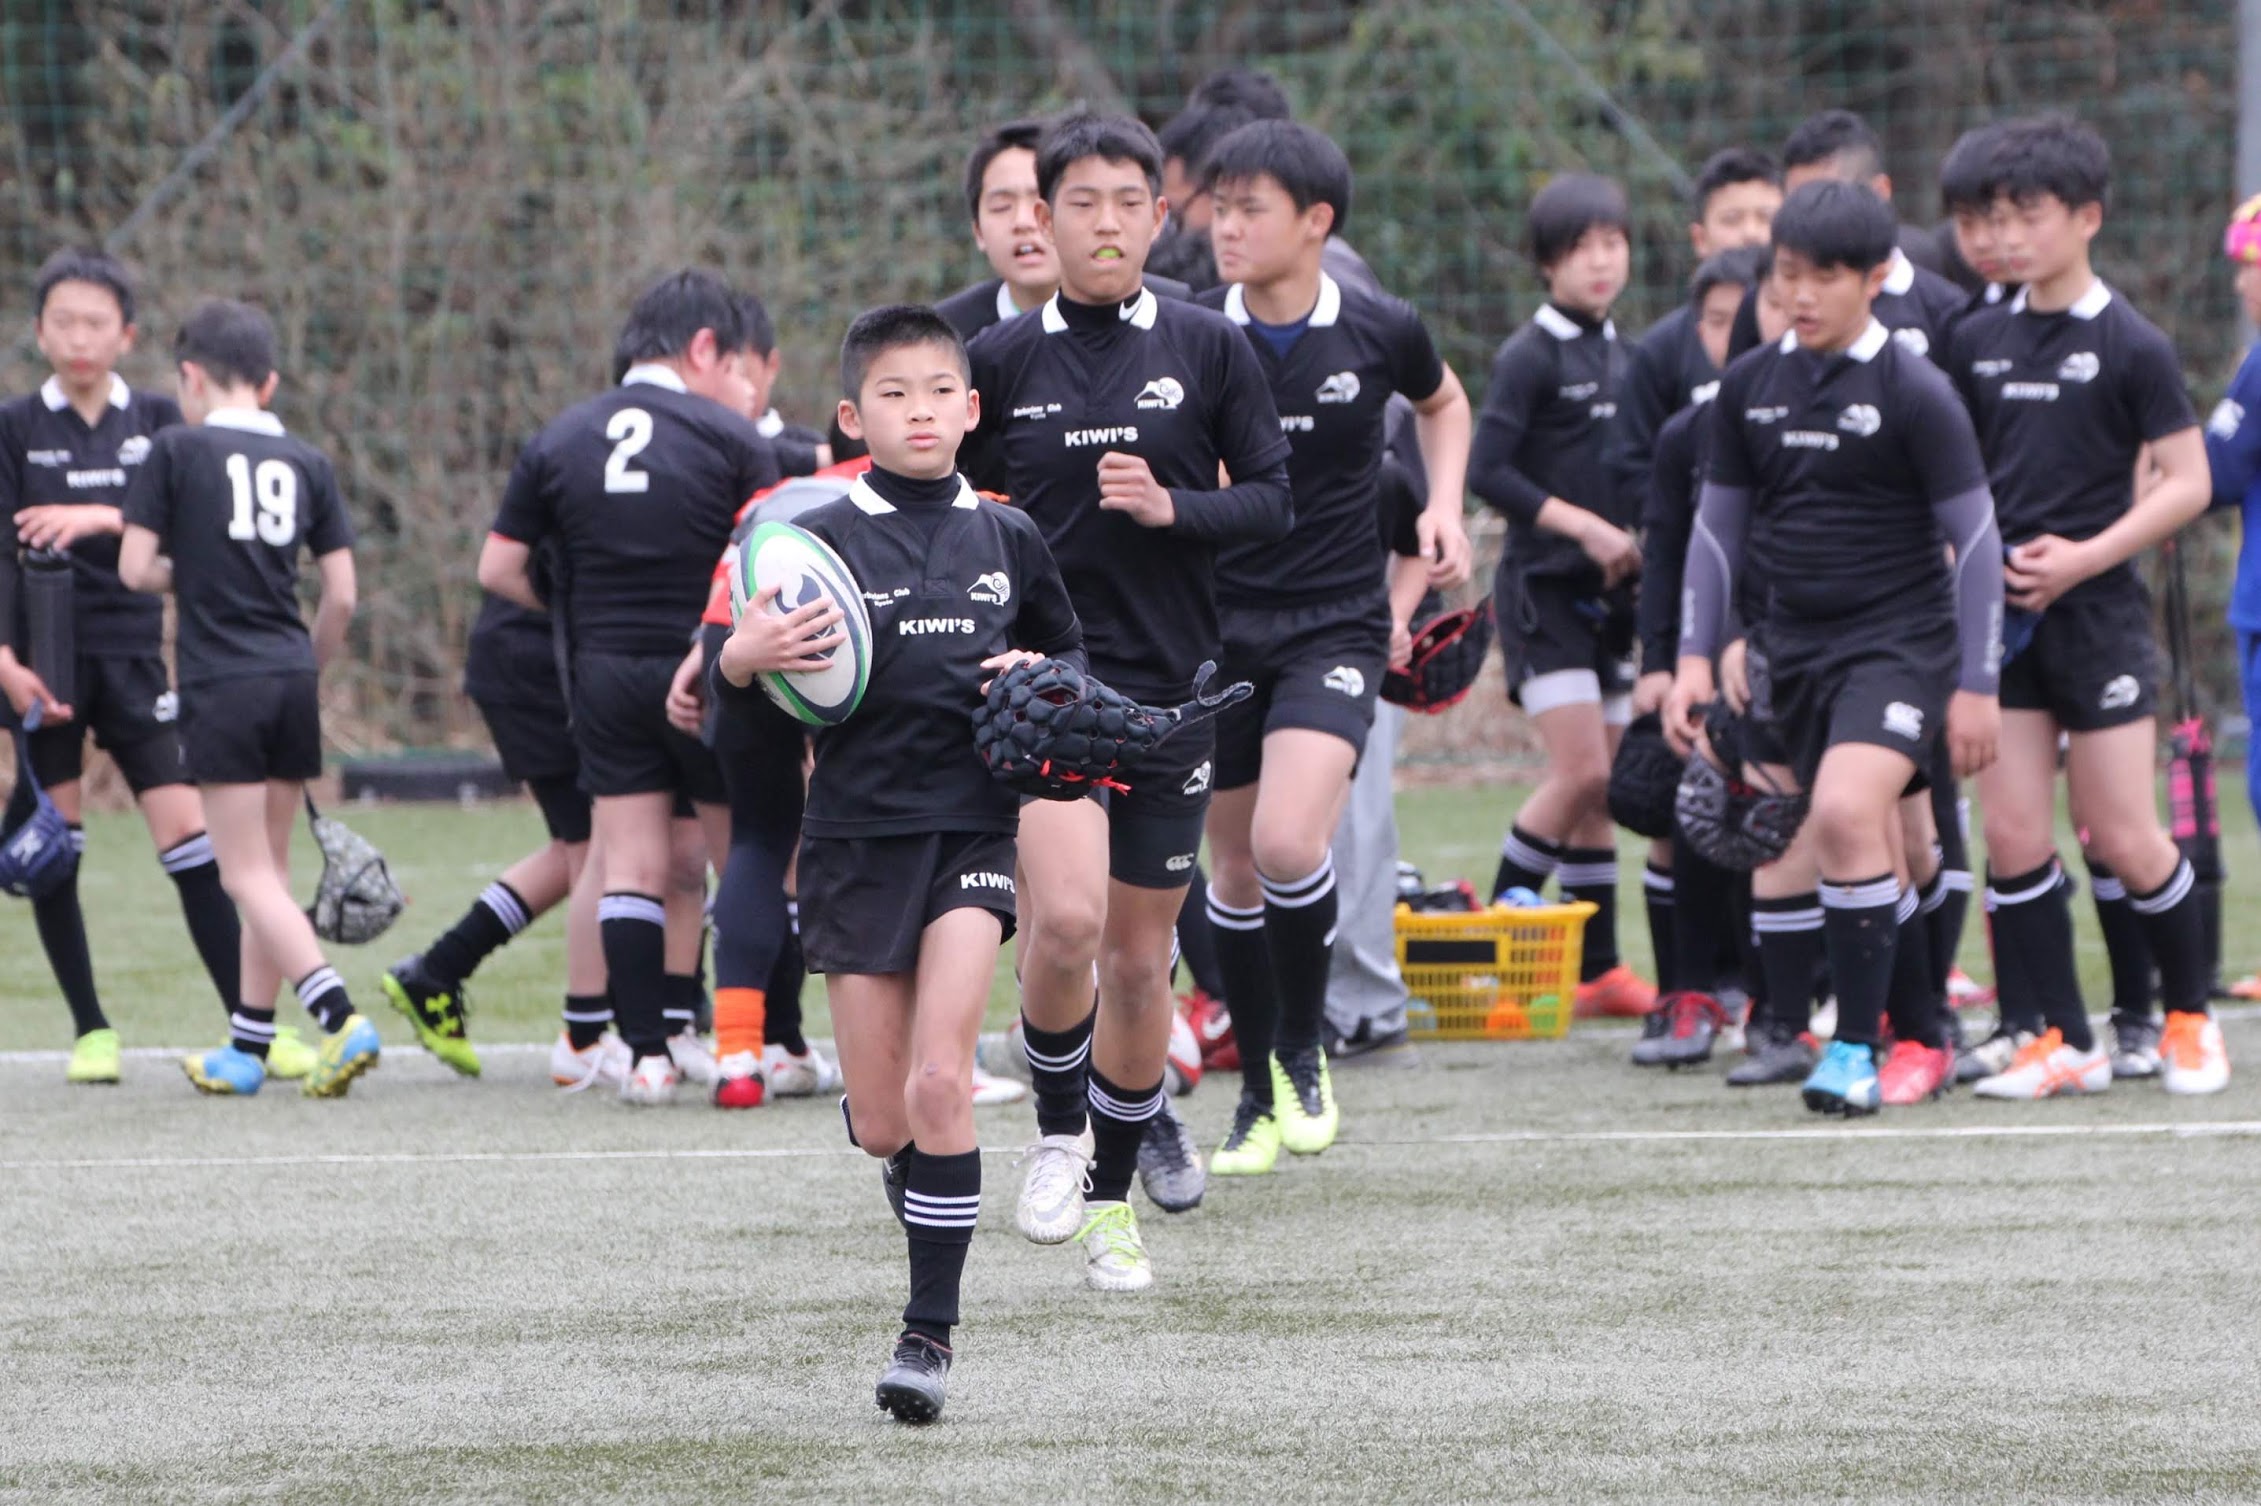 19年3月21日 Kiwi S18年度最後の交流試合 Kiwi Sラグビークラブ 京都の小学生ラグビースクール